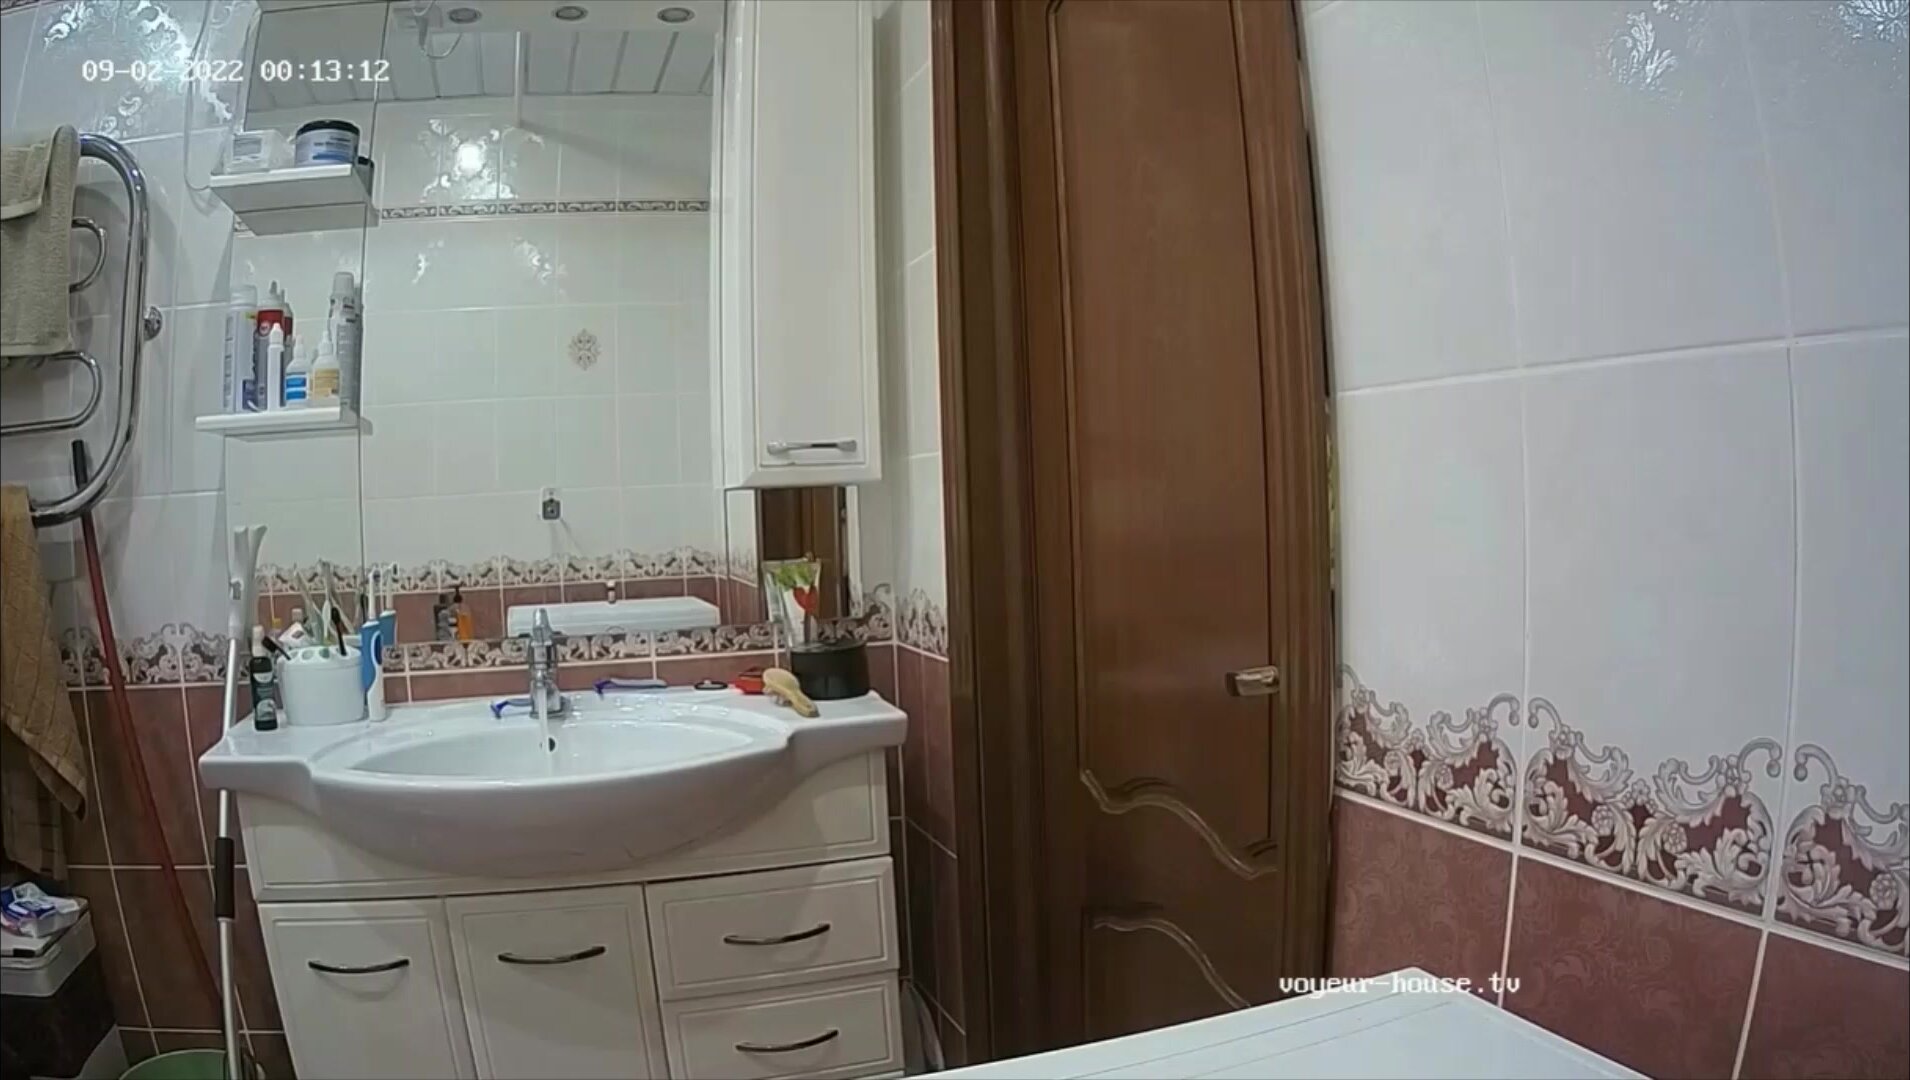 Woman pooping in Toilet 484